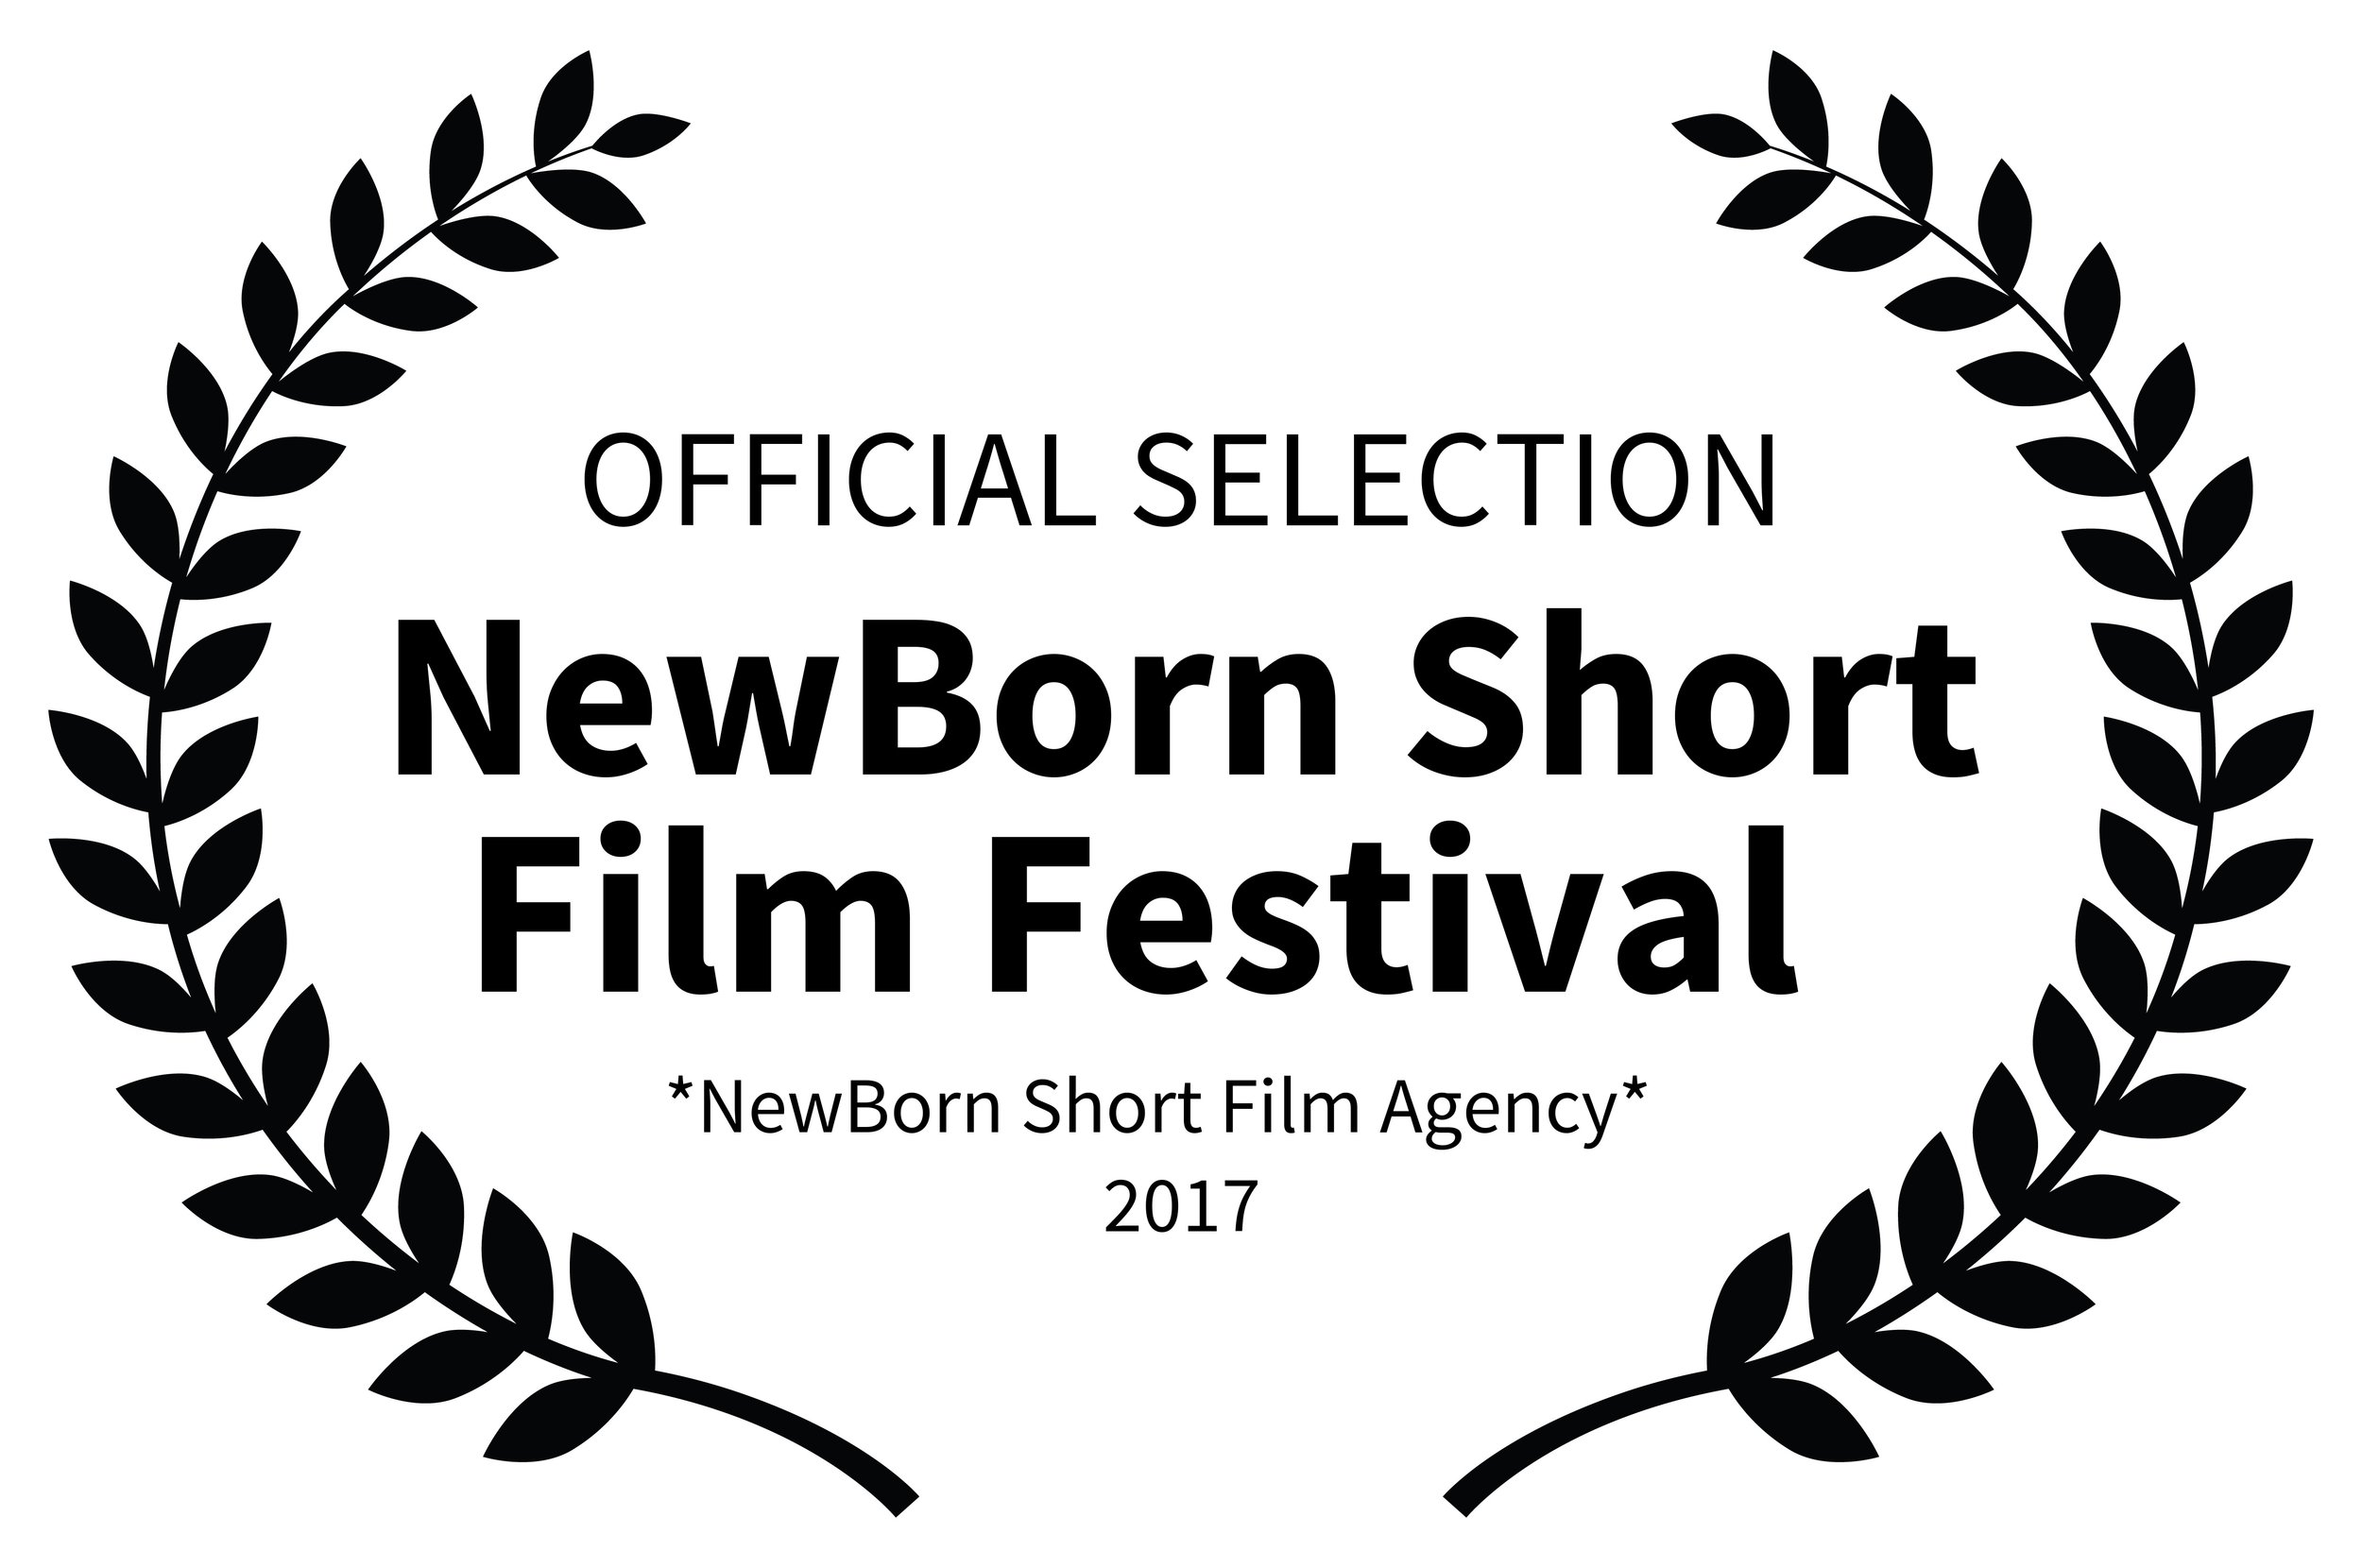 OFFICIALSELECTION-NewBornShortFilmFestival-NewBornShortFilmAgency2017.jpg